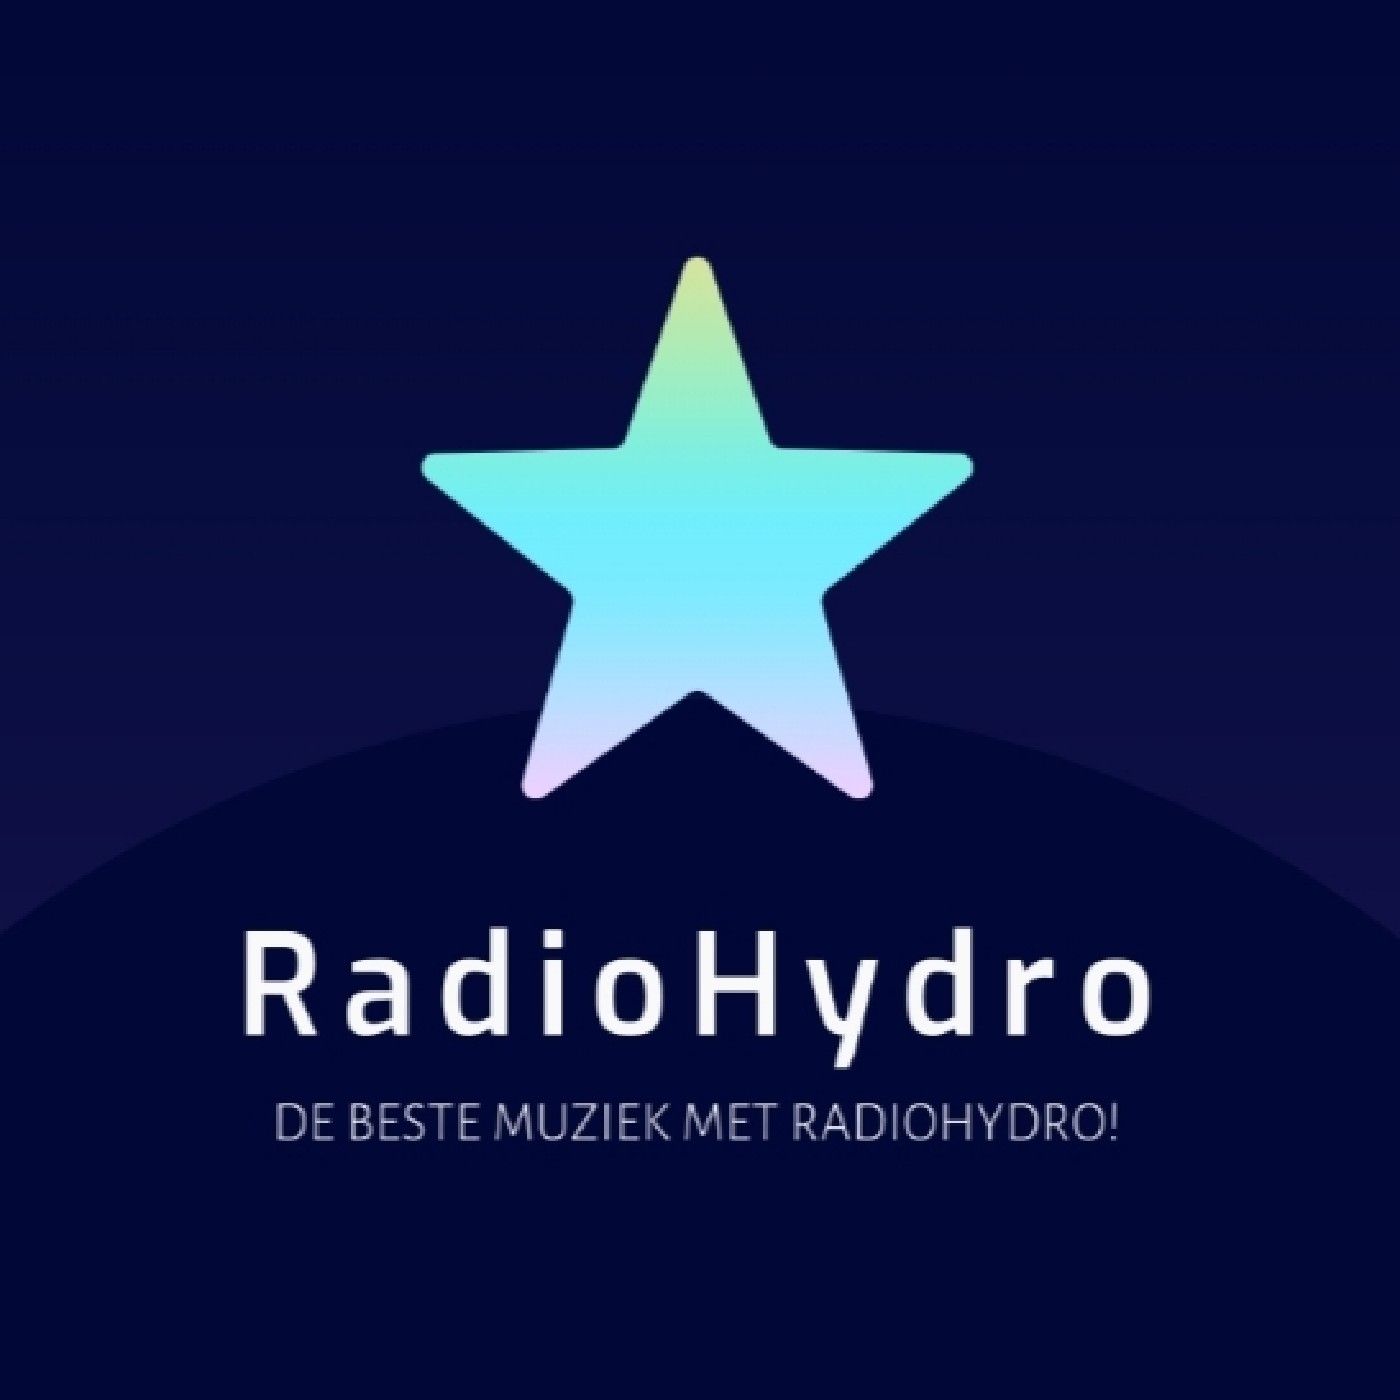 RadioHydro